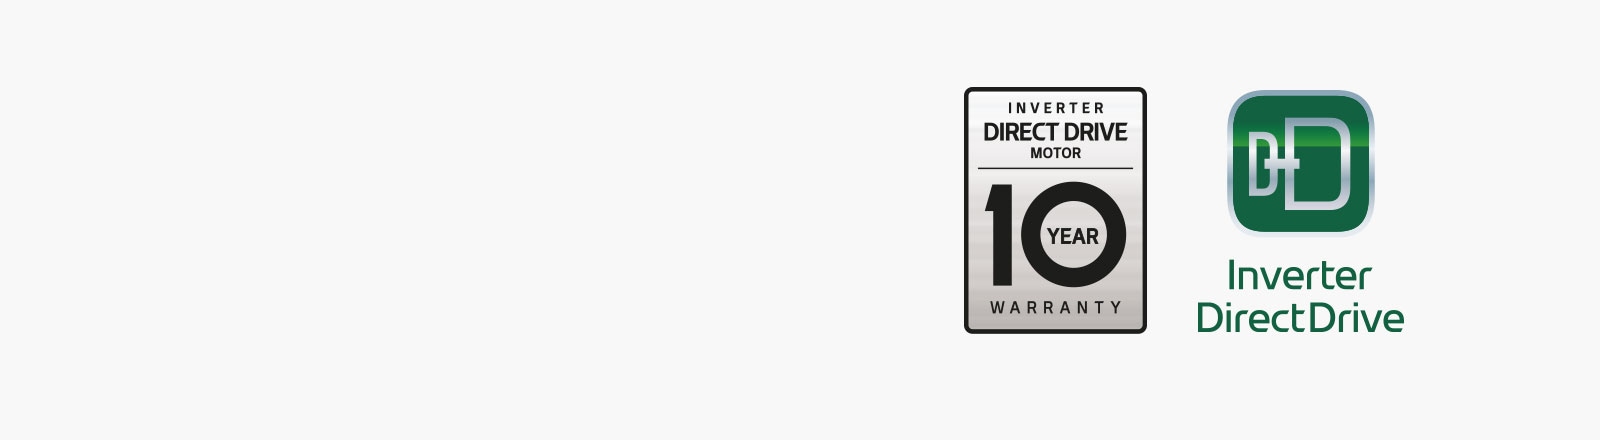 Slika prikazuije Inverter Direct Drive logo i znak 10-godišnjeg jamstva